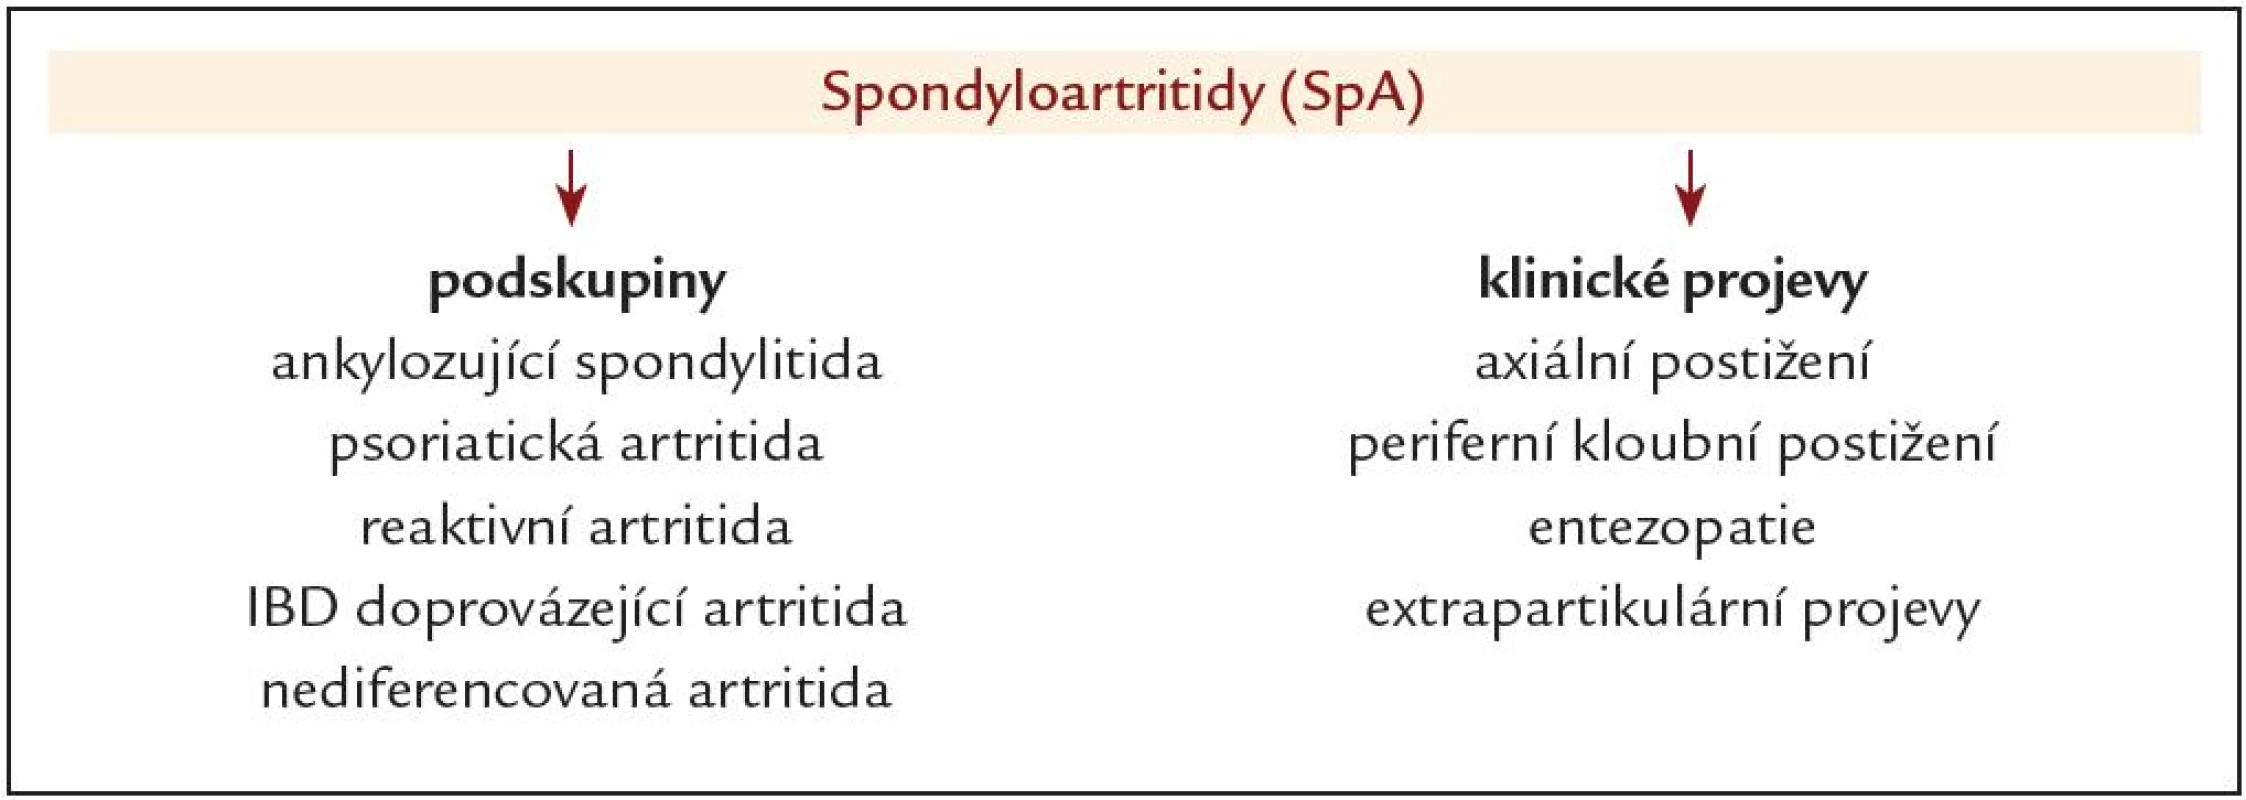 Rozdělení spondyloartritid podle klinických jednotek a predominantních klinických projevů.